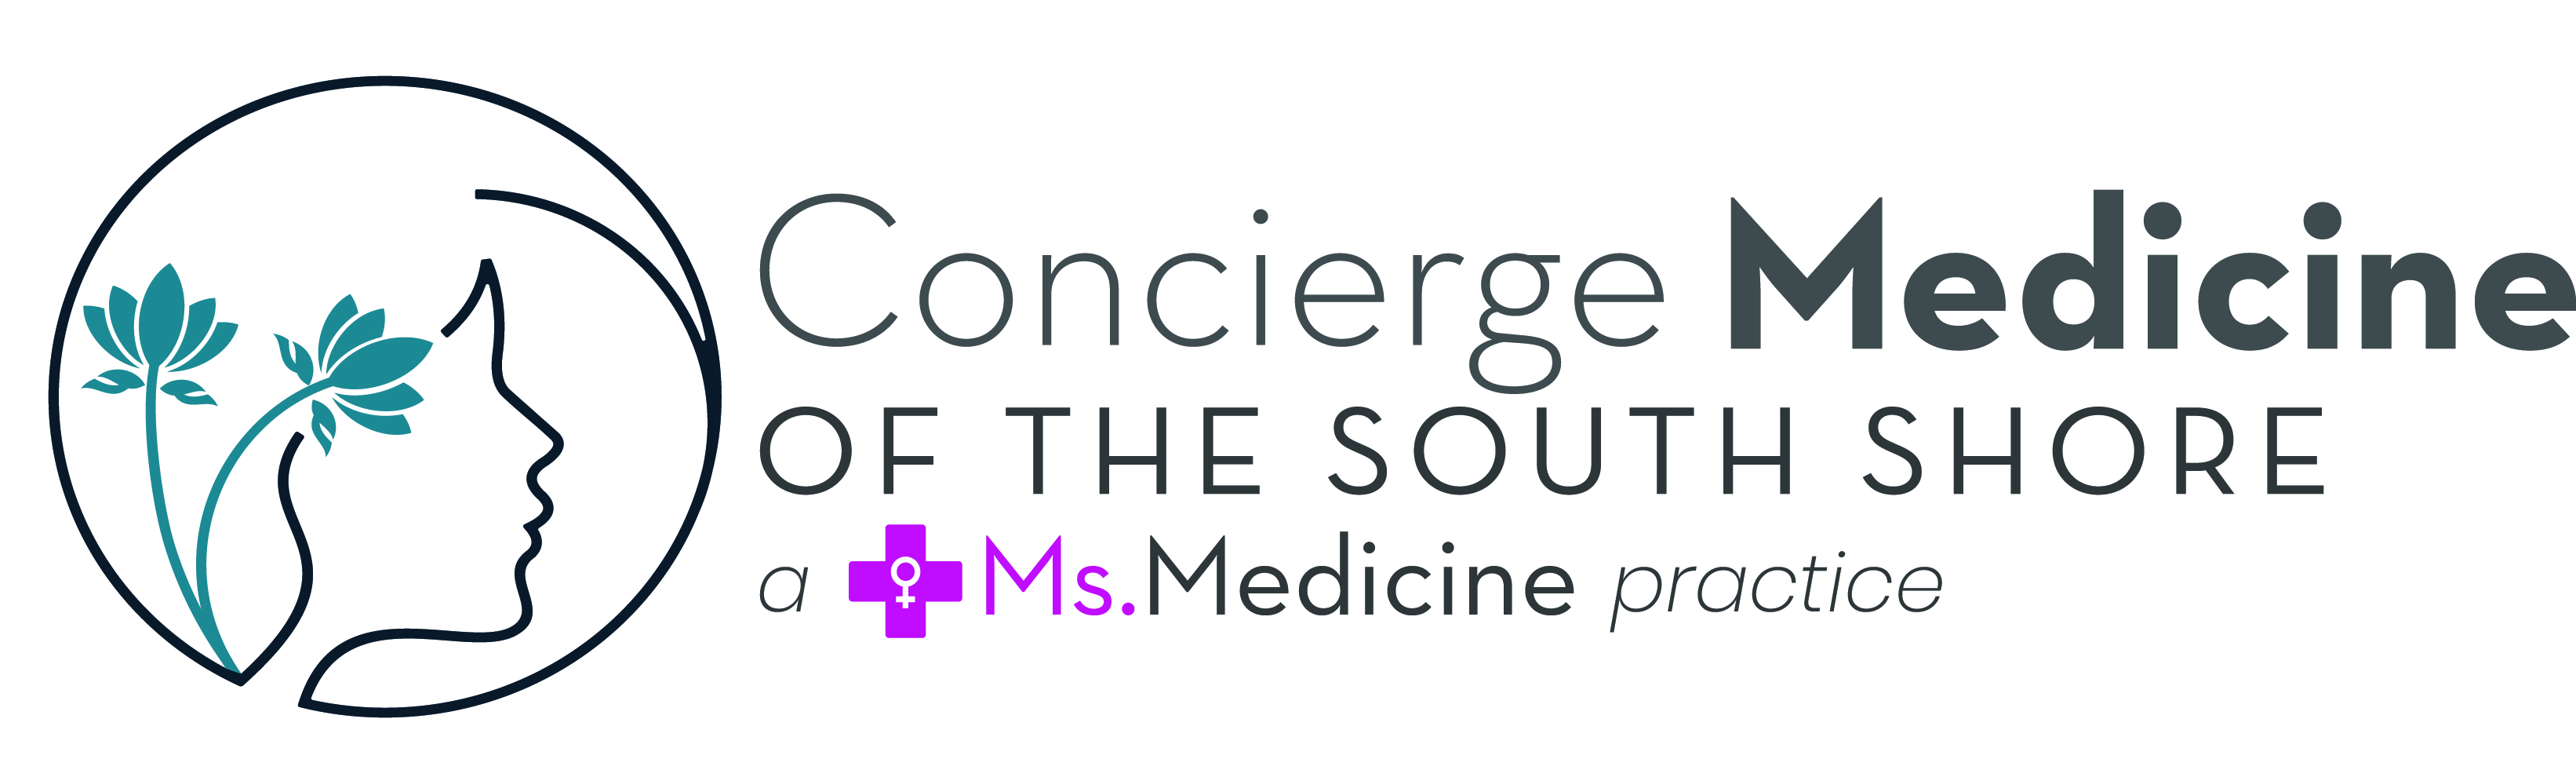 Concierge Medicine of the South Shore